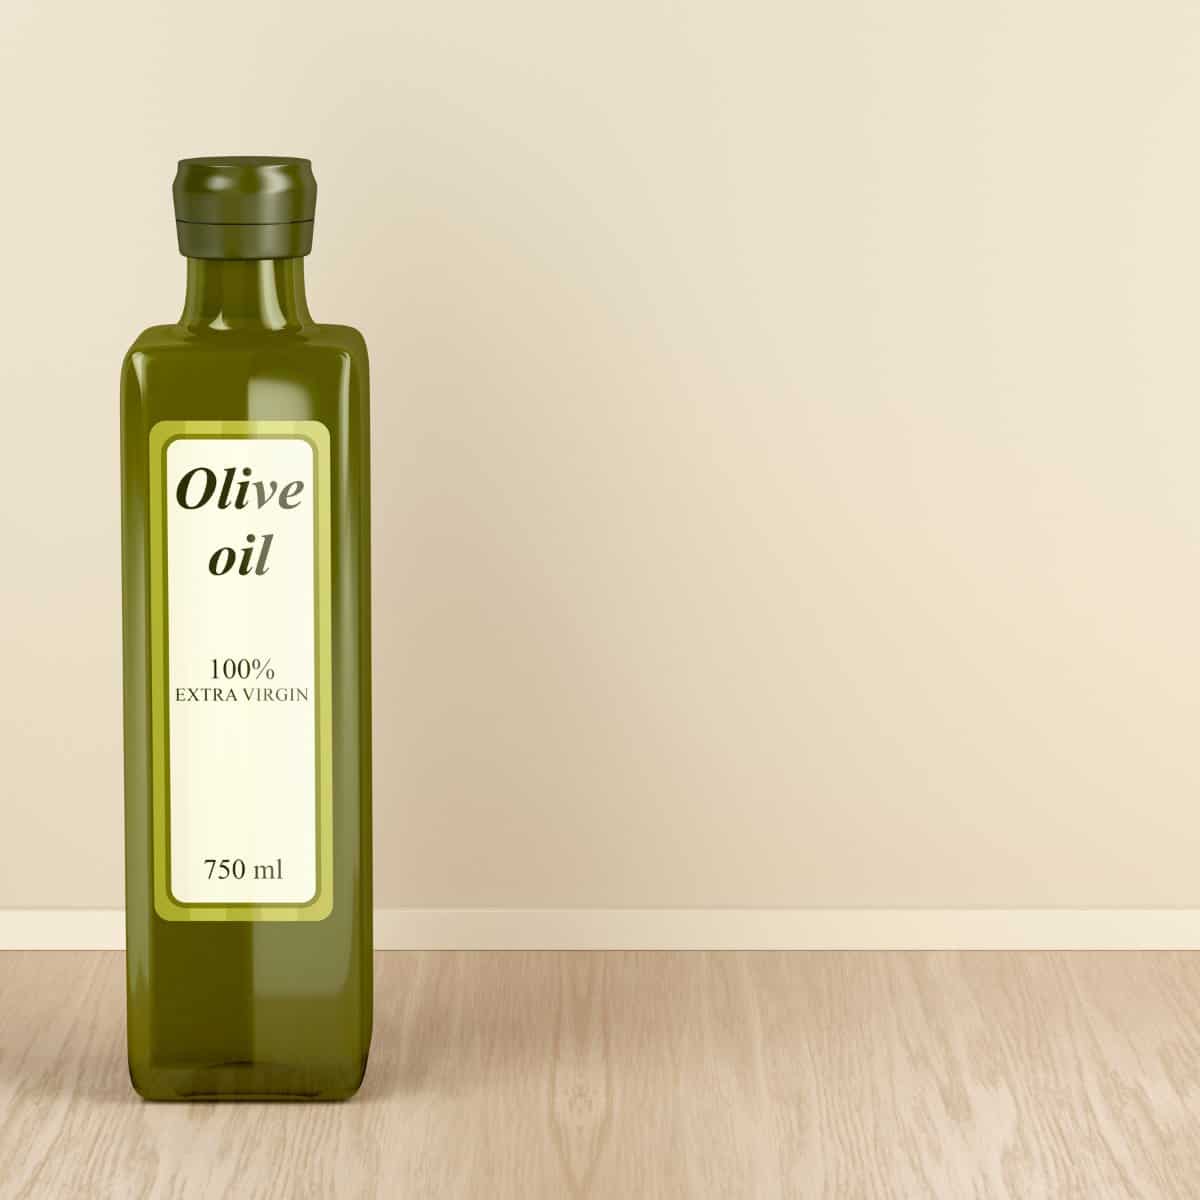 Extra virgin olilive oil ke eng